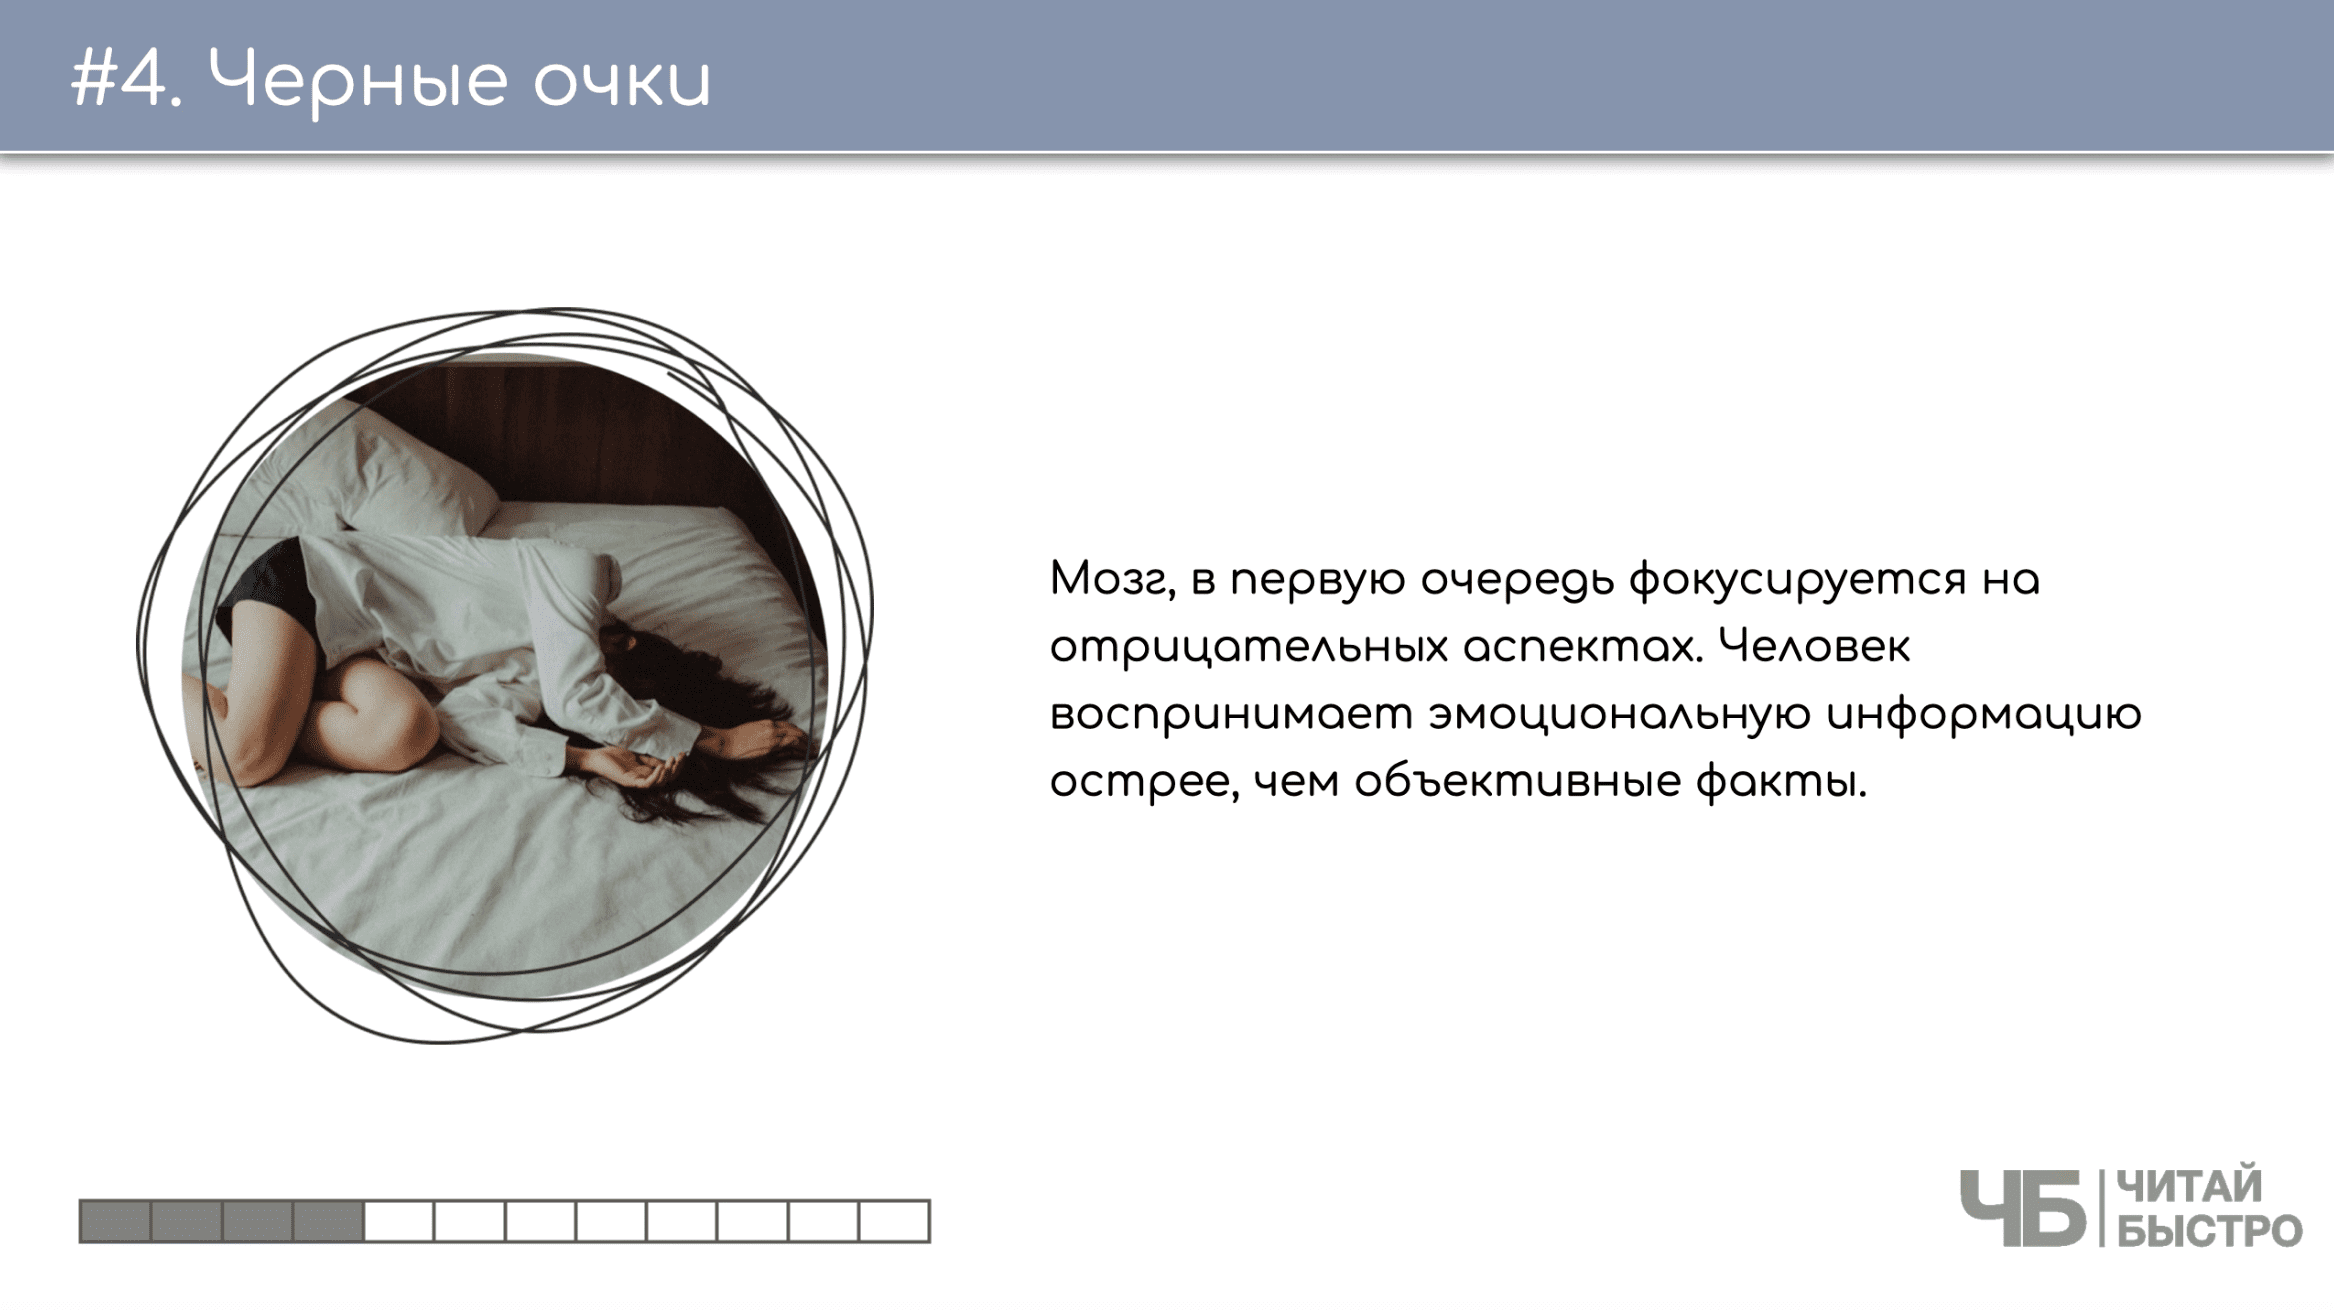 На этом слайде изображен тезис о черных очках и иллюстрация девушки в кровати.